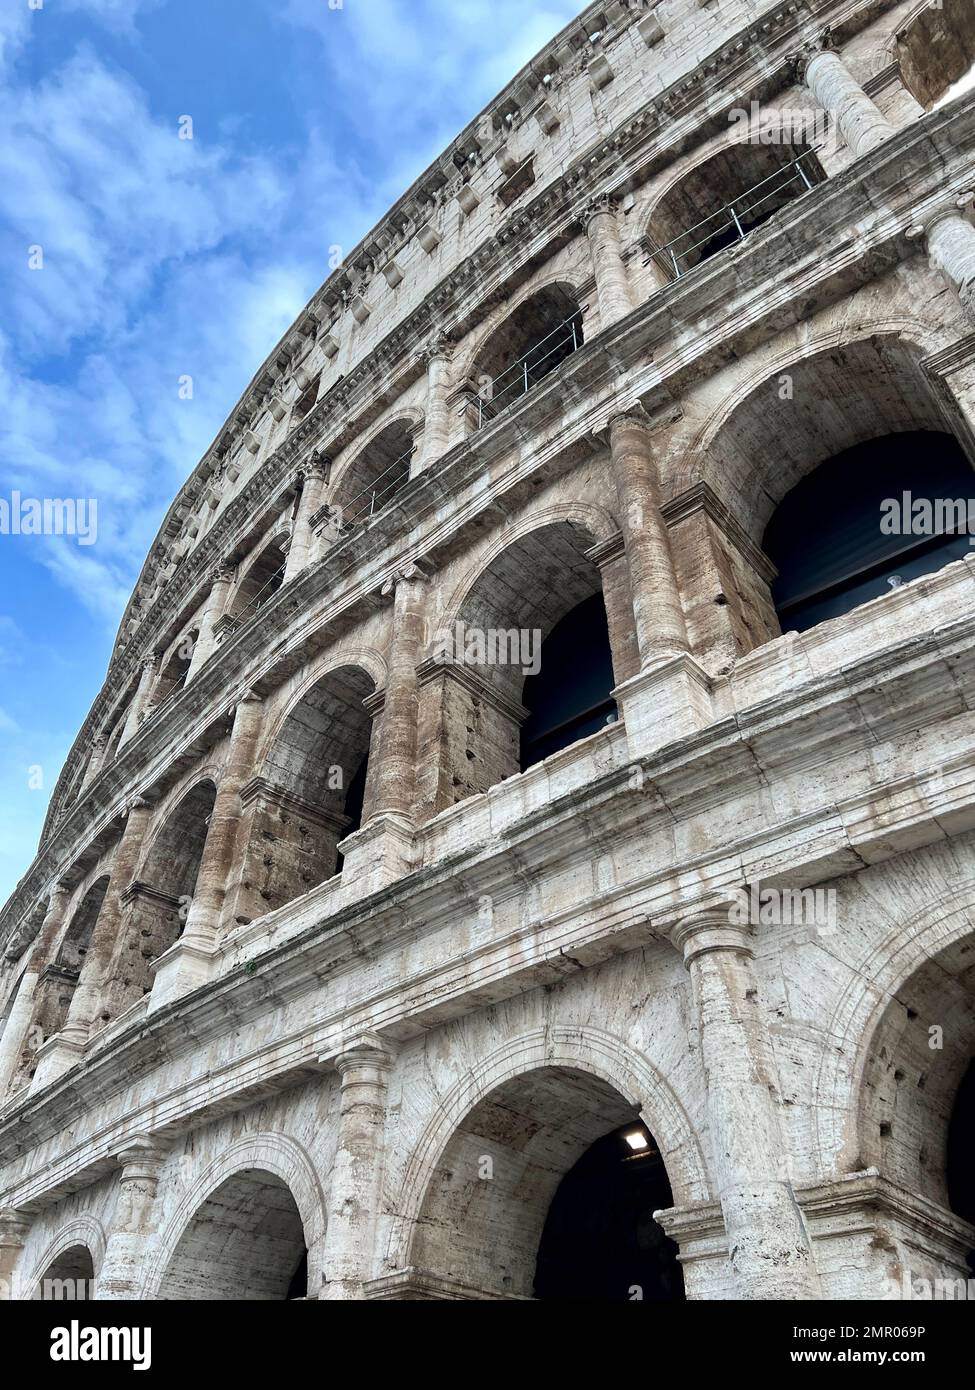 Das Kolosseum wurde tagsüber aufgenommen. Vertikale Ausrichtung. Das Kolosseum auf Italienisch: Das Kolosseum ist ein ovales Amphitheater im Zentrum von Rom, Italien. Stockfoto